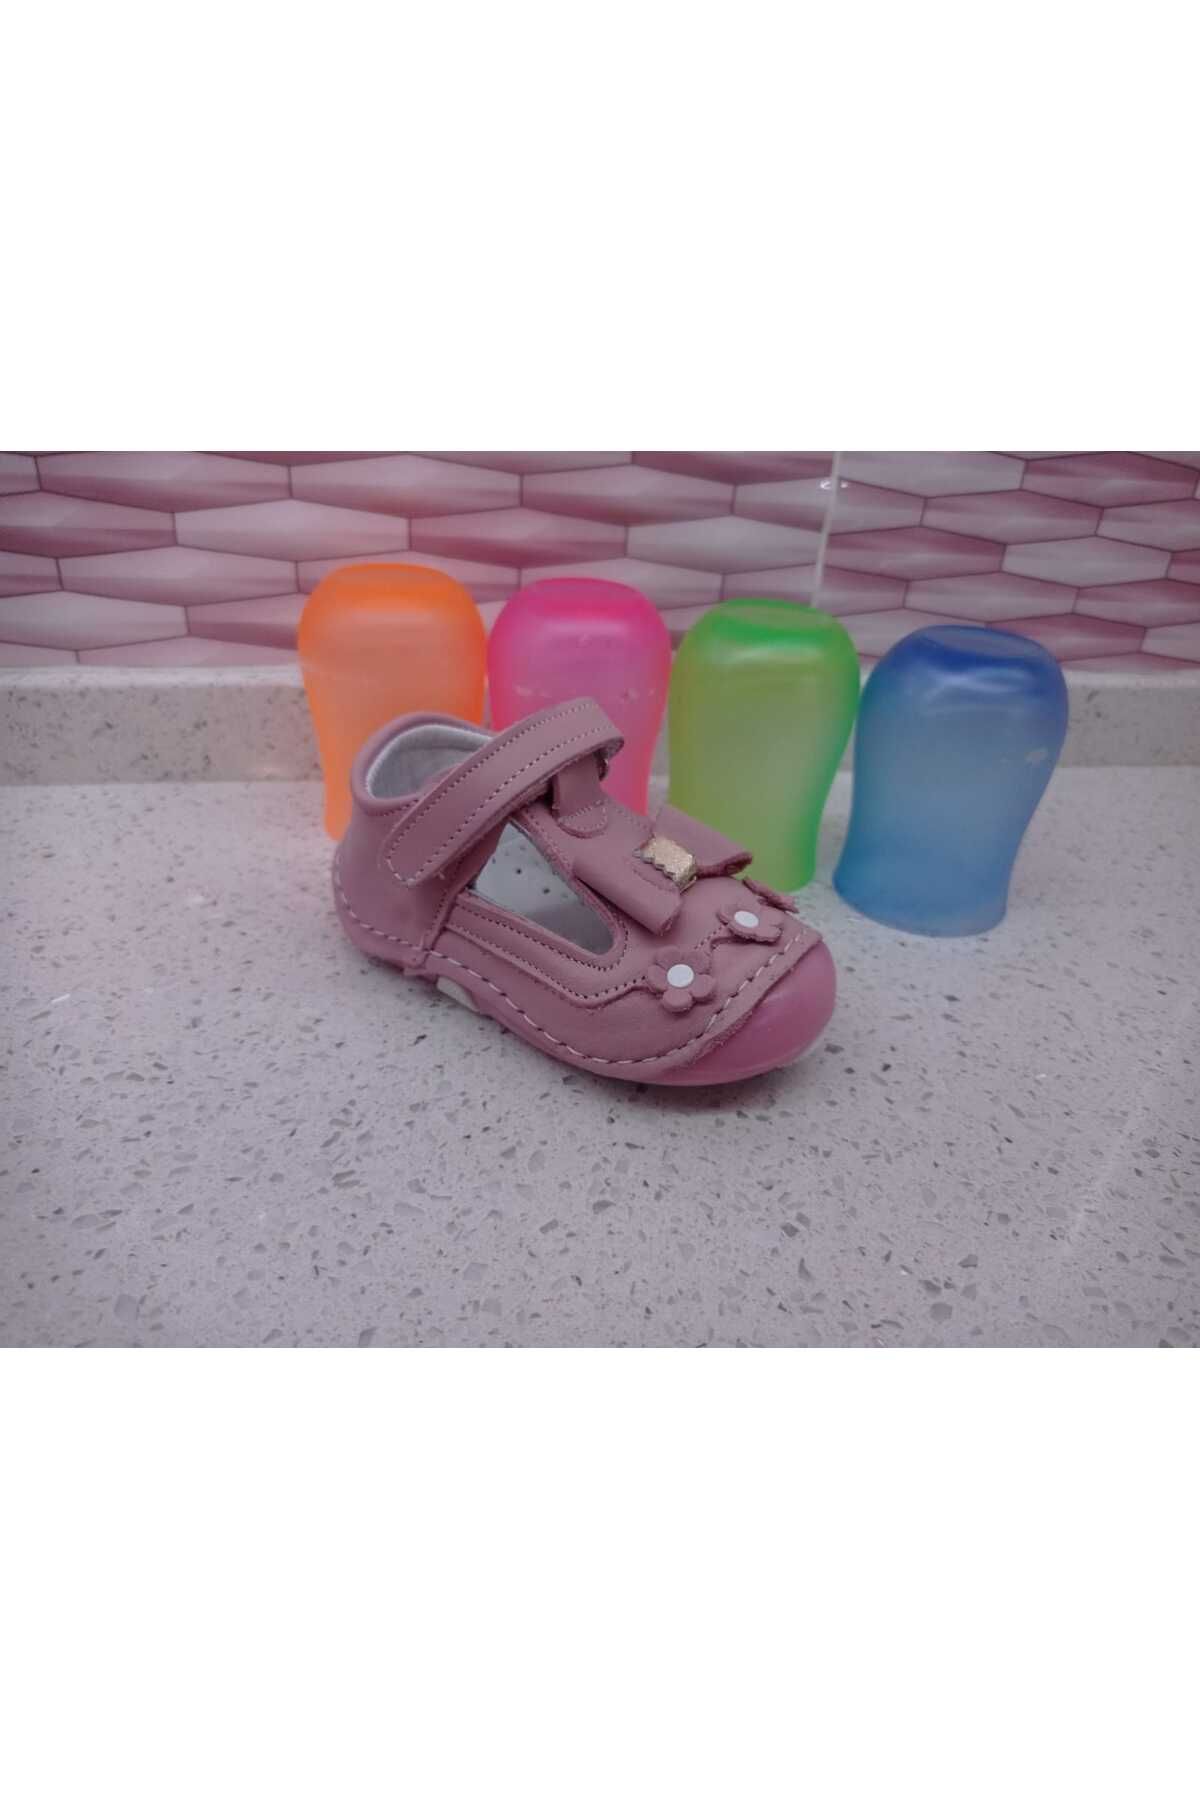 Sare Çocuk Giyim Gül Kurusu Kız Bebek Hakiki Deri Yumuşak Ortopedik Ayakkabı